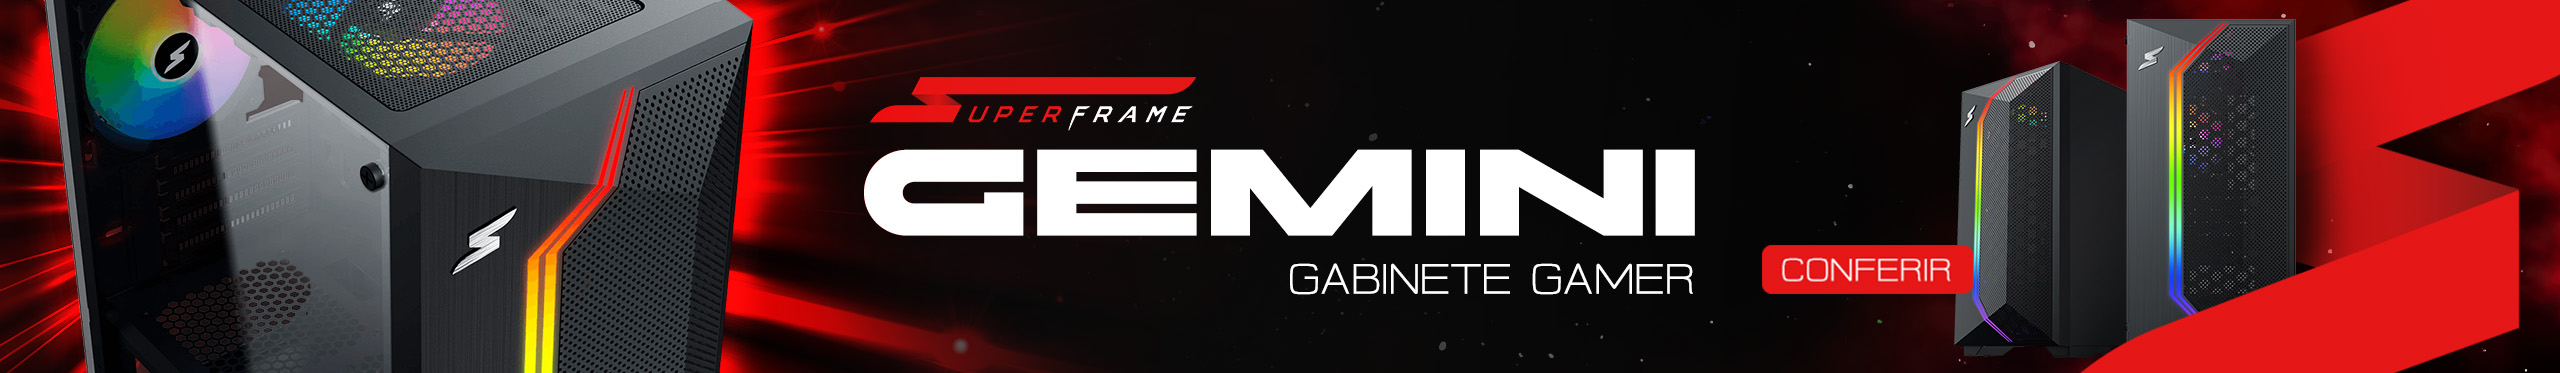 Gabinete Gamer Gemini | Seu setup em outro nível. Saiba mais!